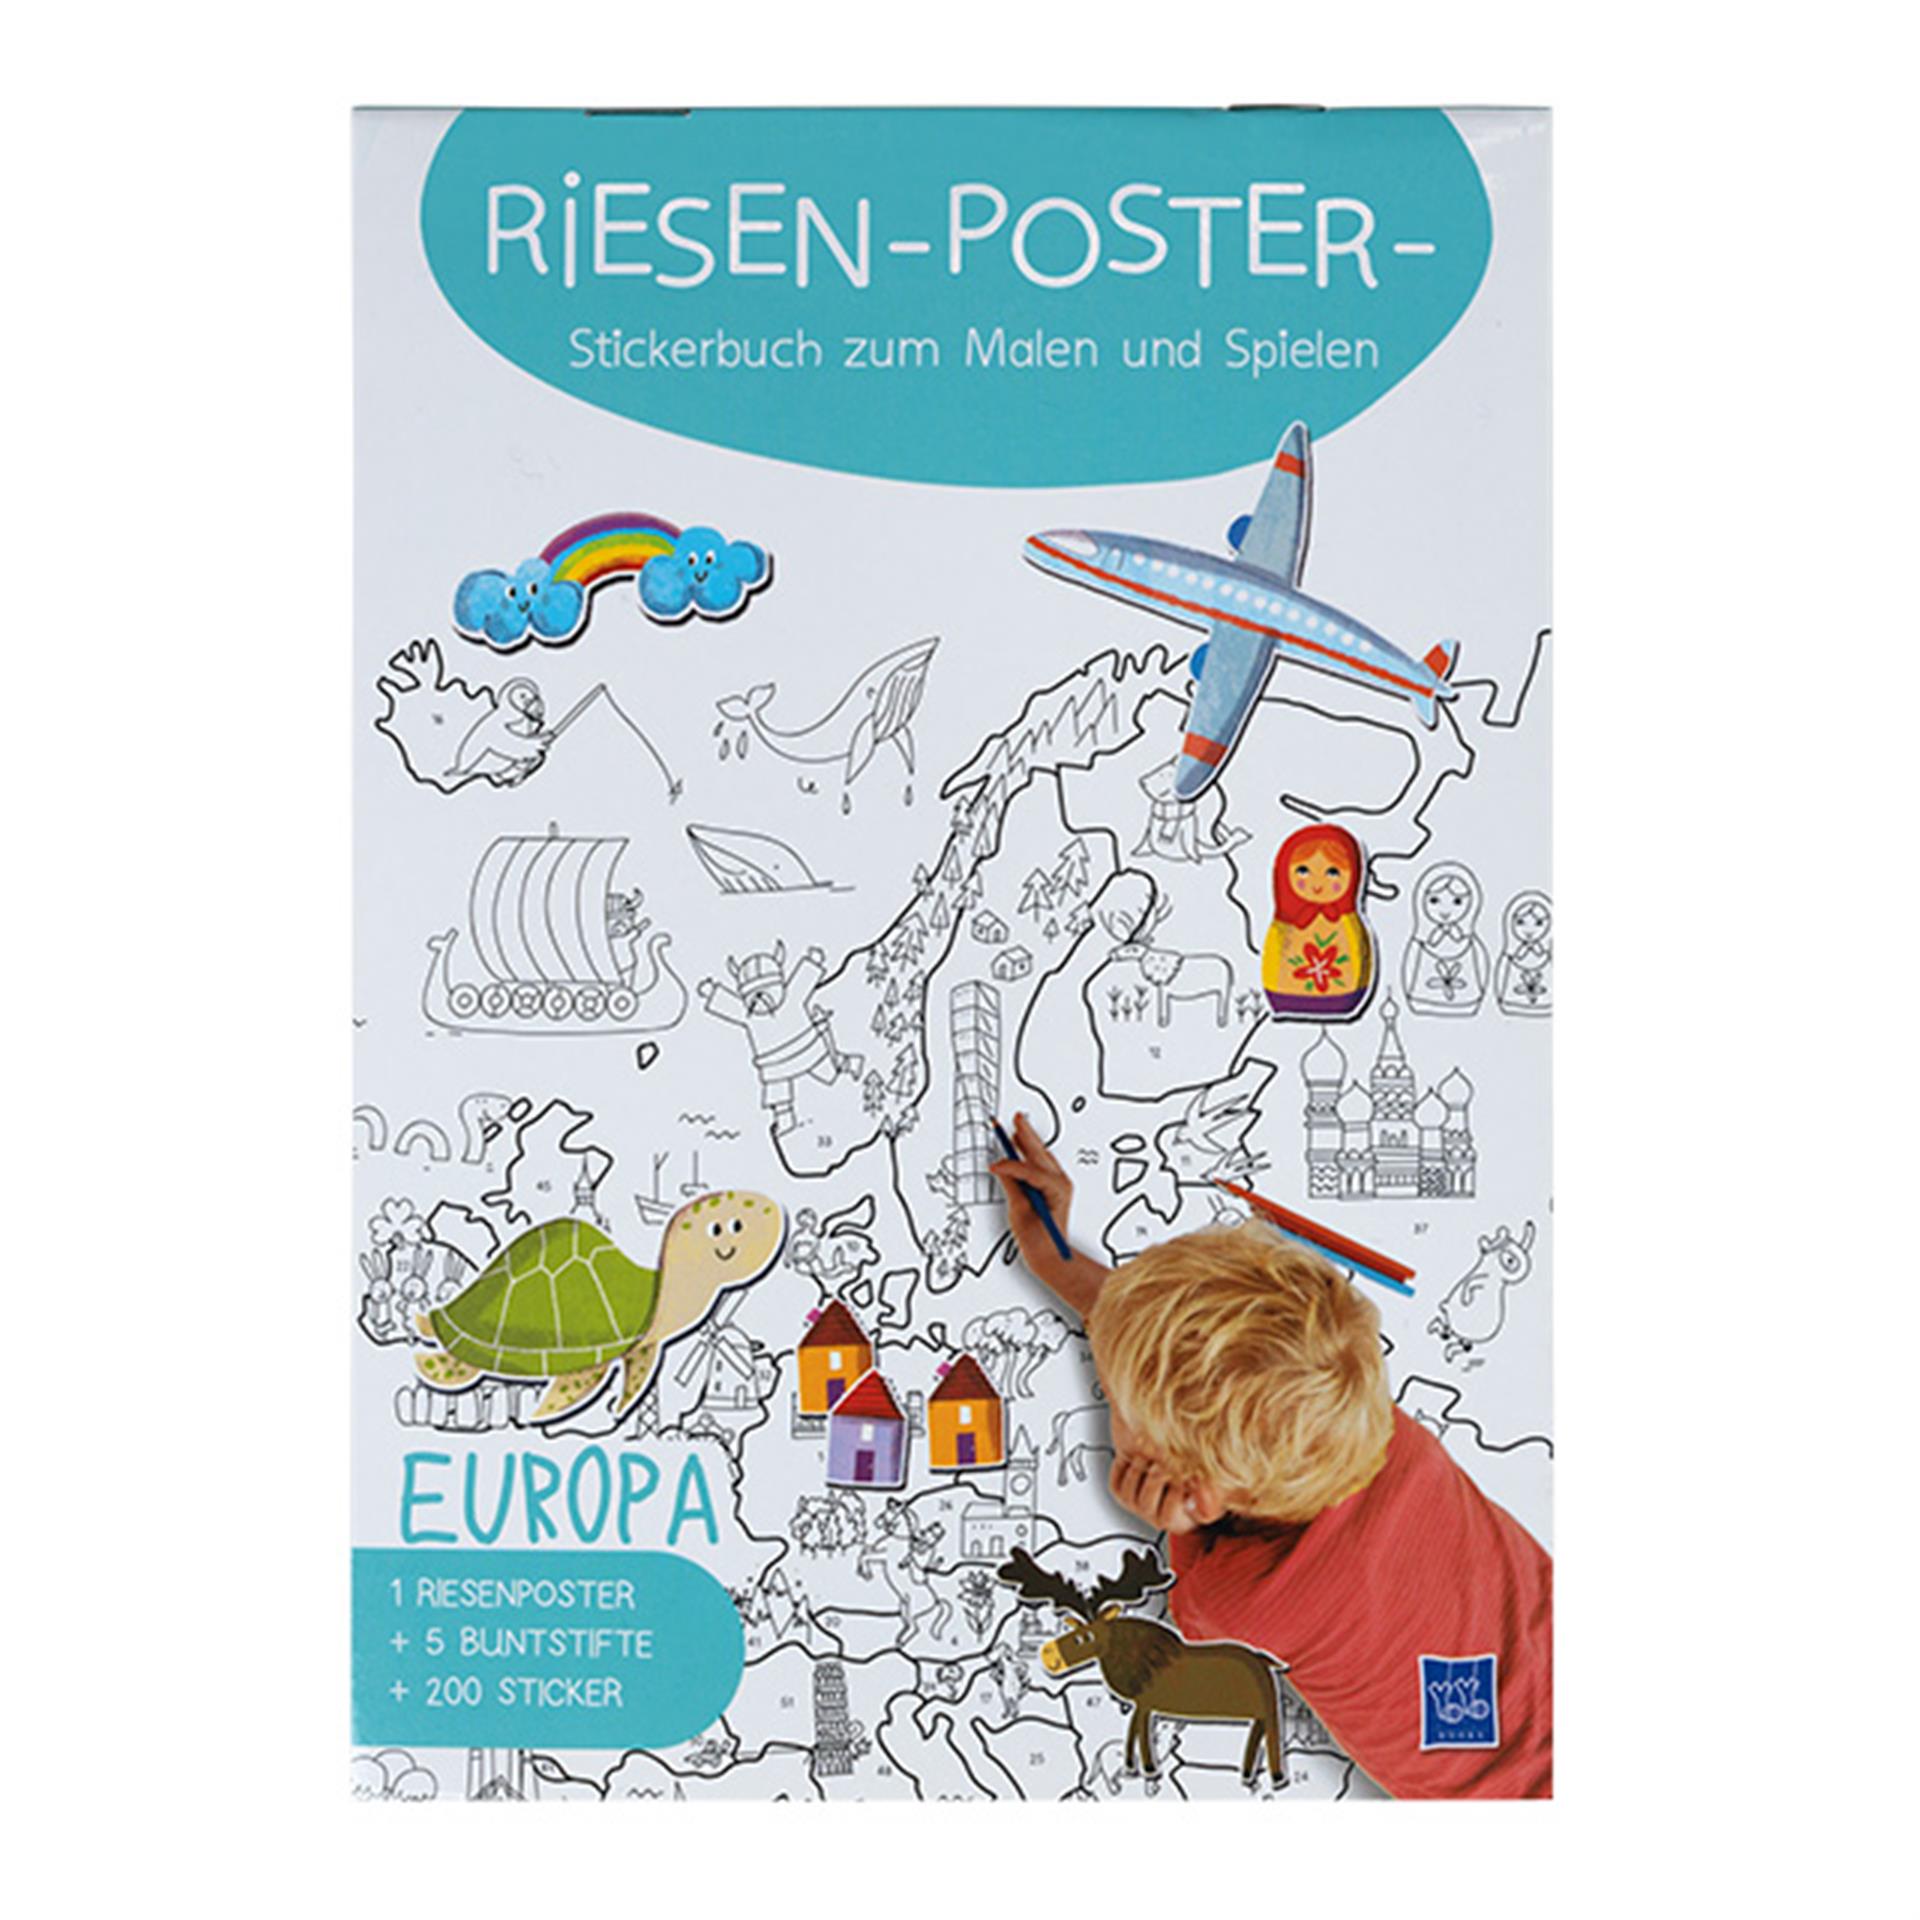 2 album di adesivi per poster giganti sul mondo e sull’Europa